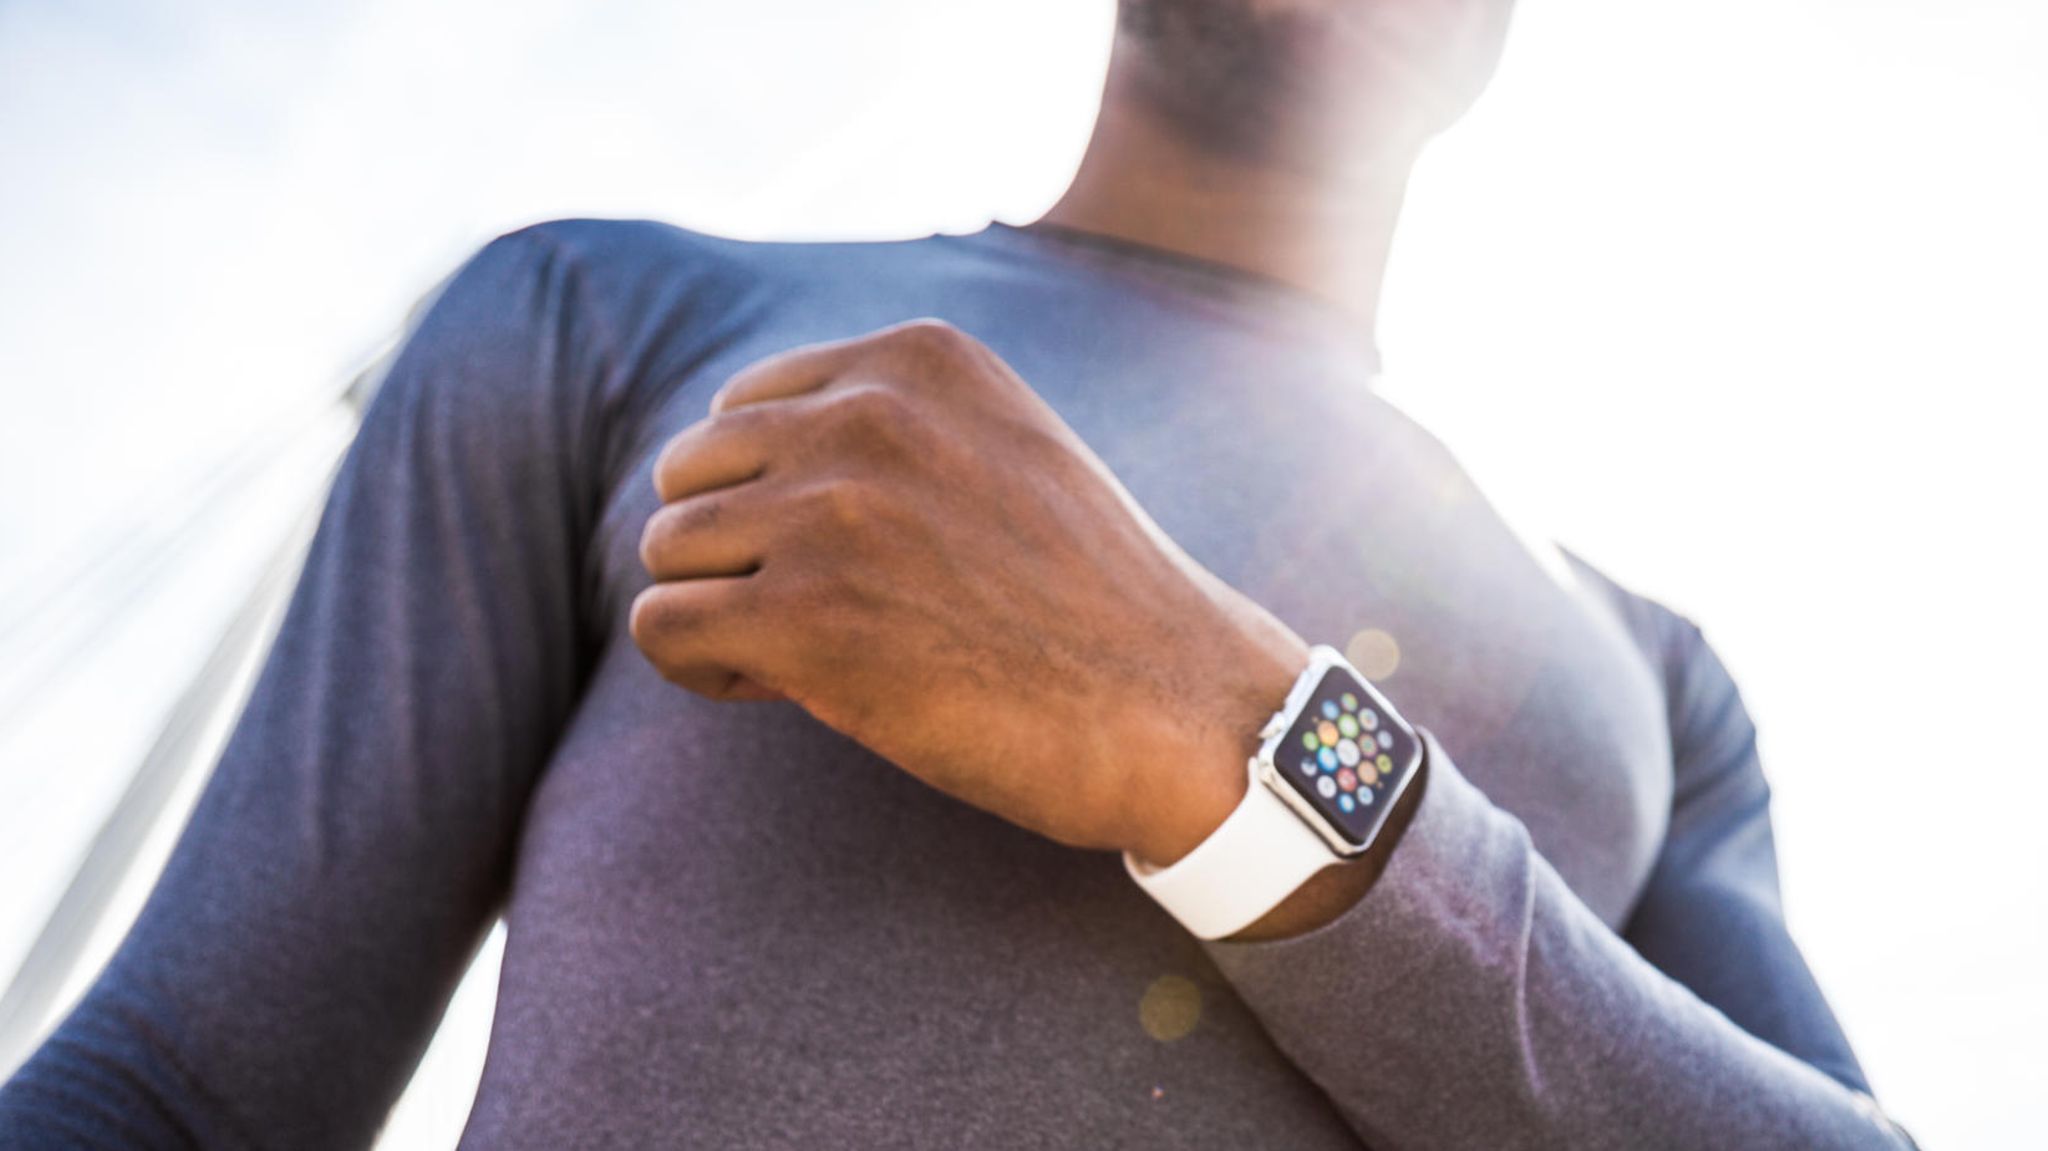 Smartwatch-Test: Uhren von Apple, Samsung und Co. bei Stiftung